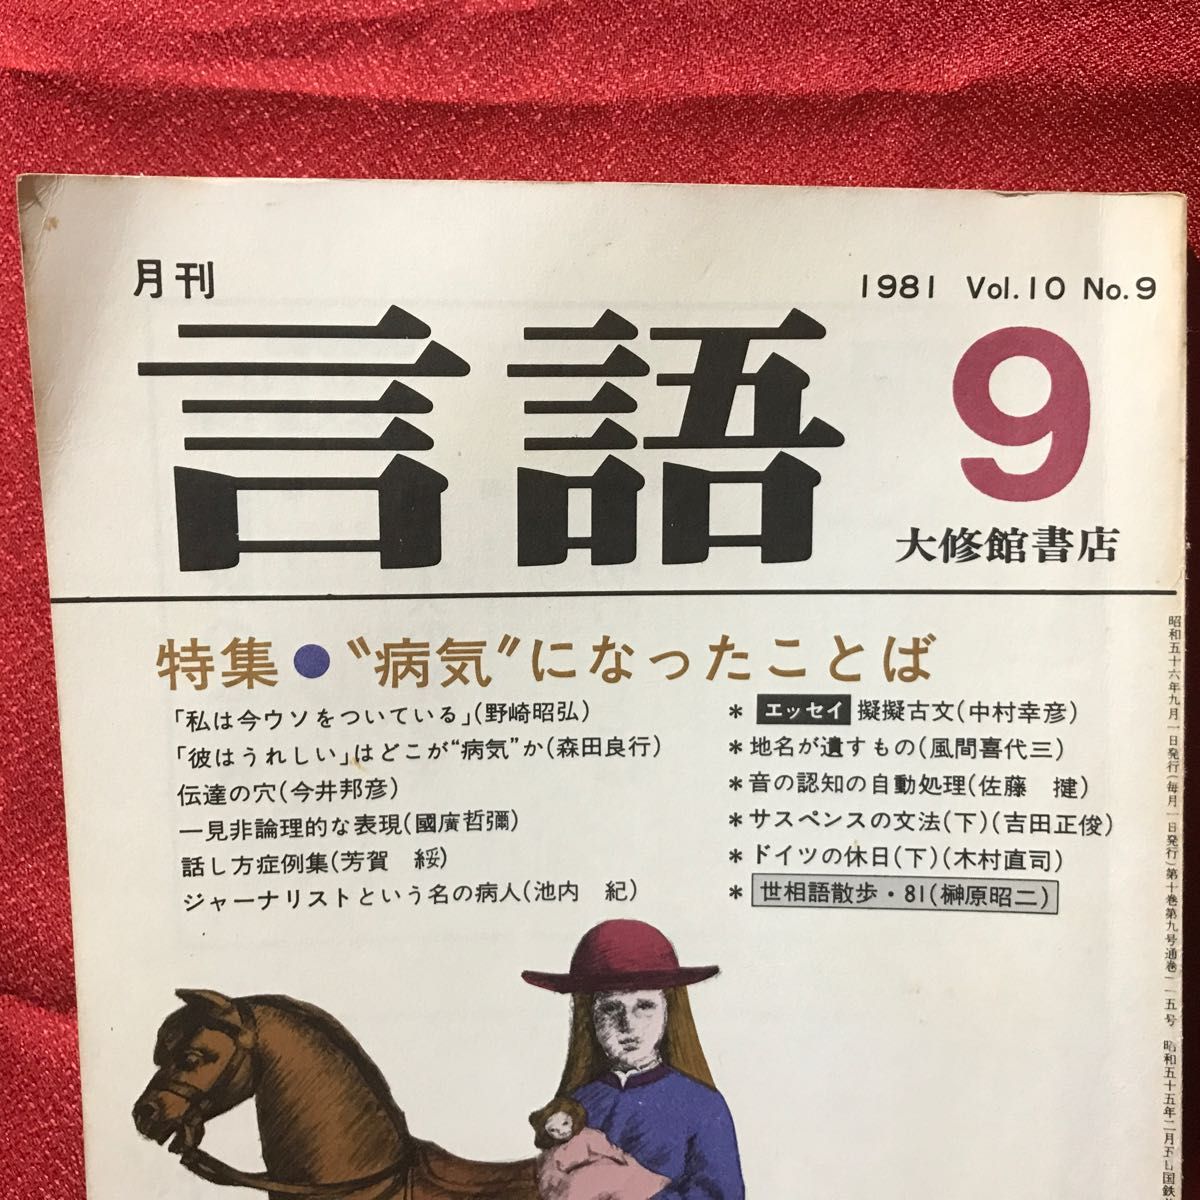 『言語・特集=病気になったことば』大修館書店1981Vol.10No.9